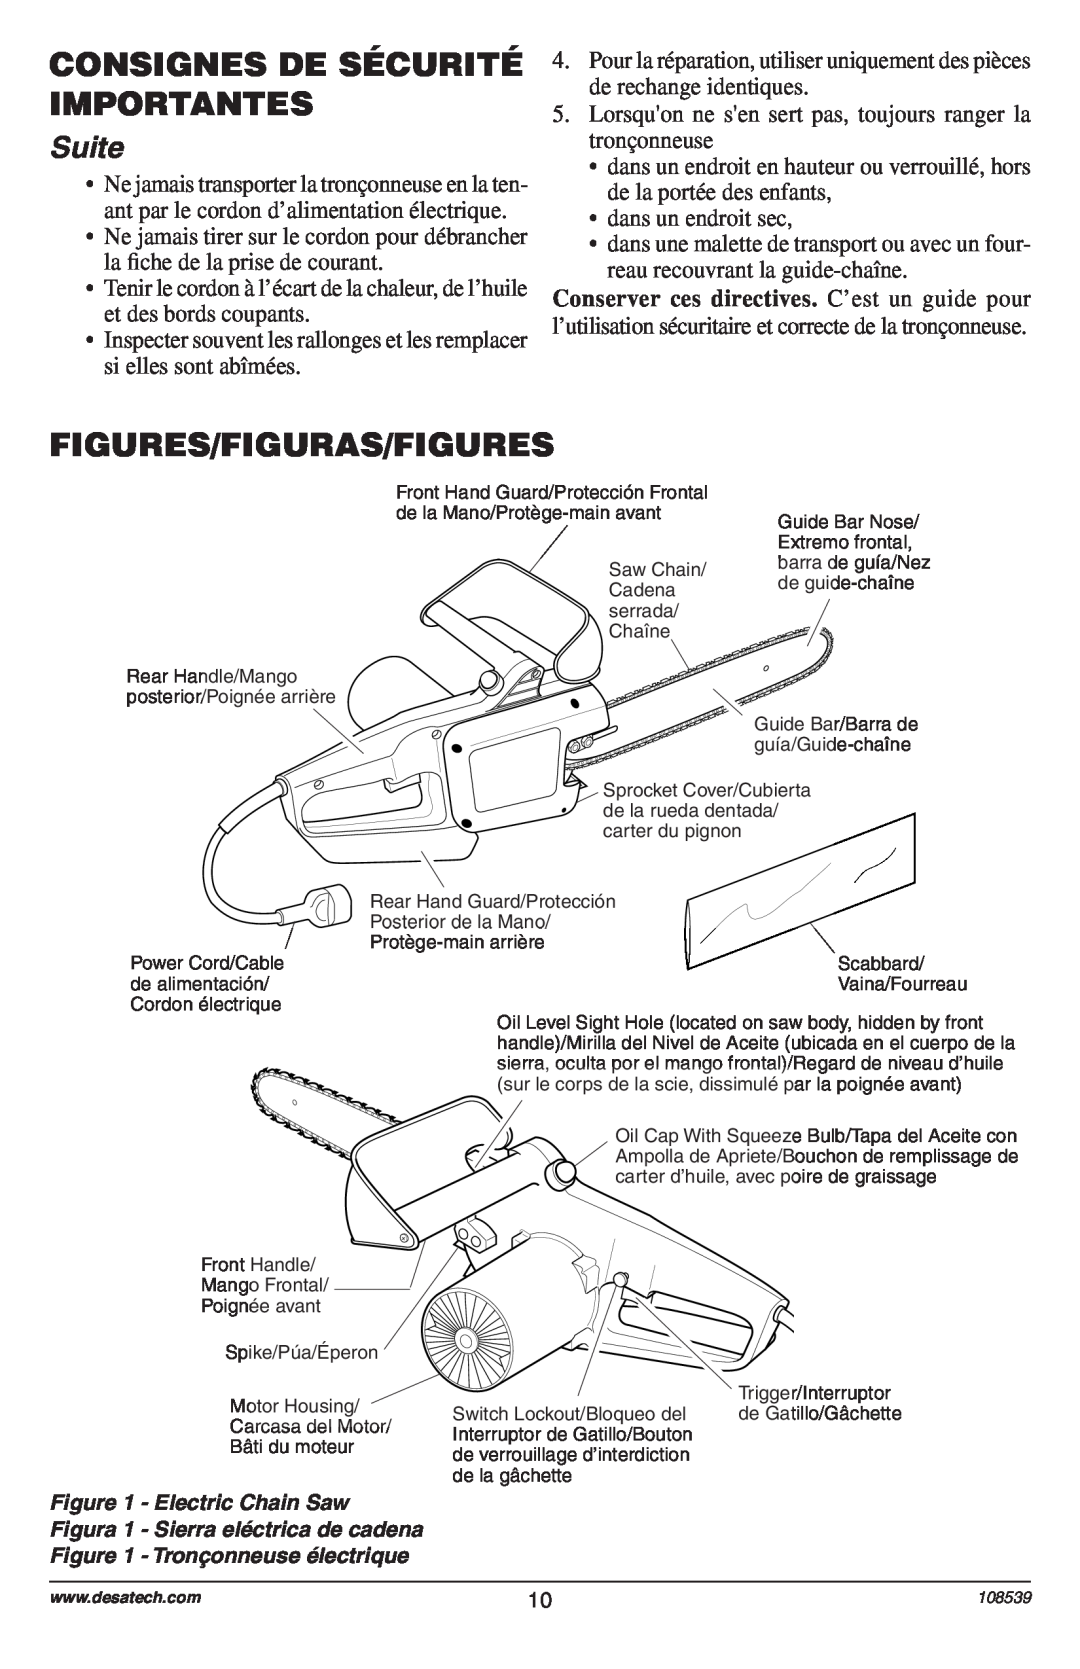 Remington Power Tools 104316-04, 106890-01 owner manual Figures/Figuras/Figures, Consignes De Sécurité Importantes, Suite 